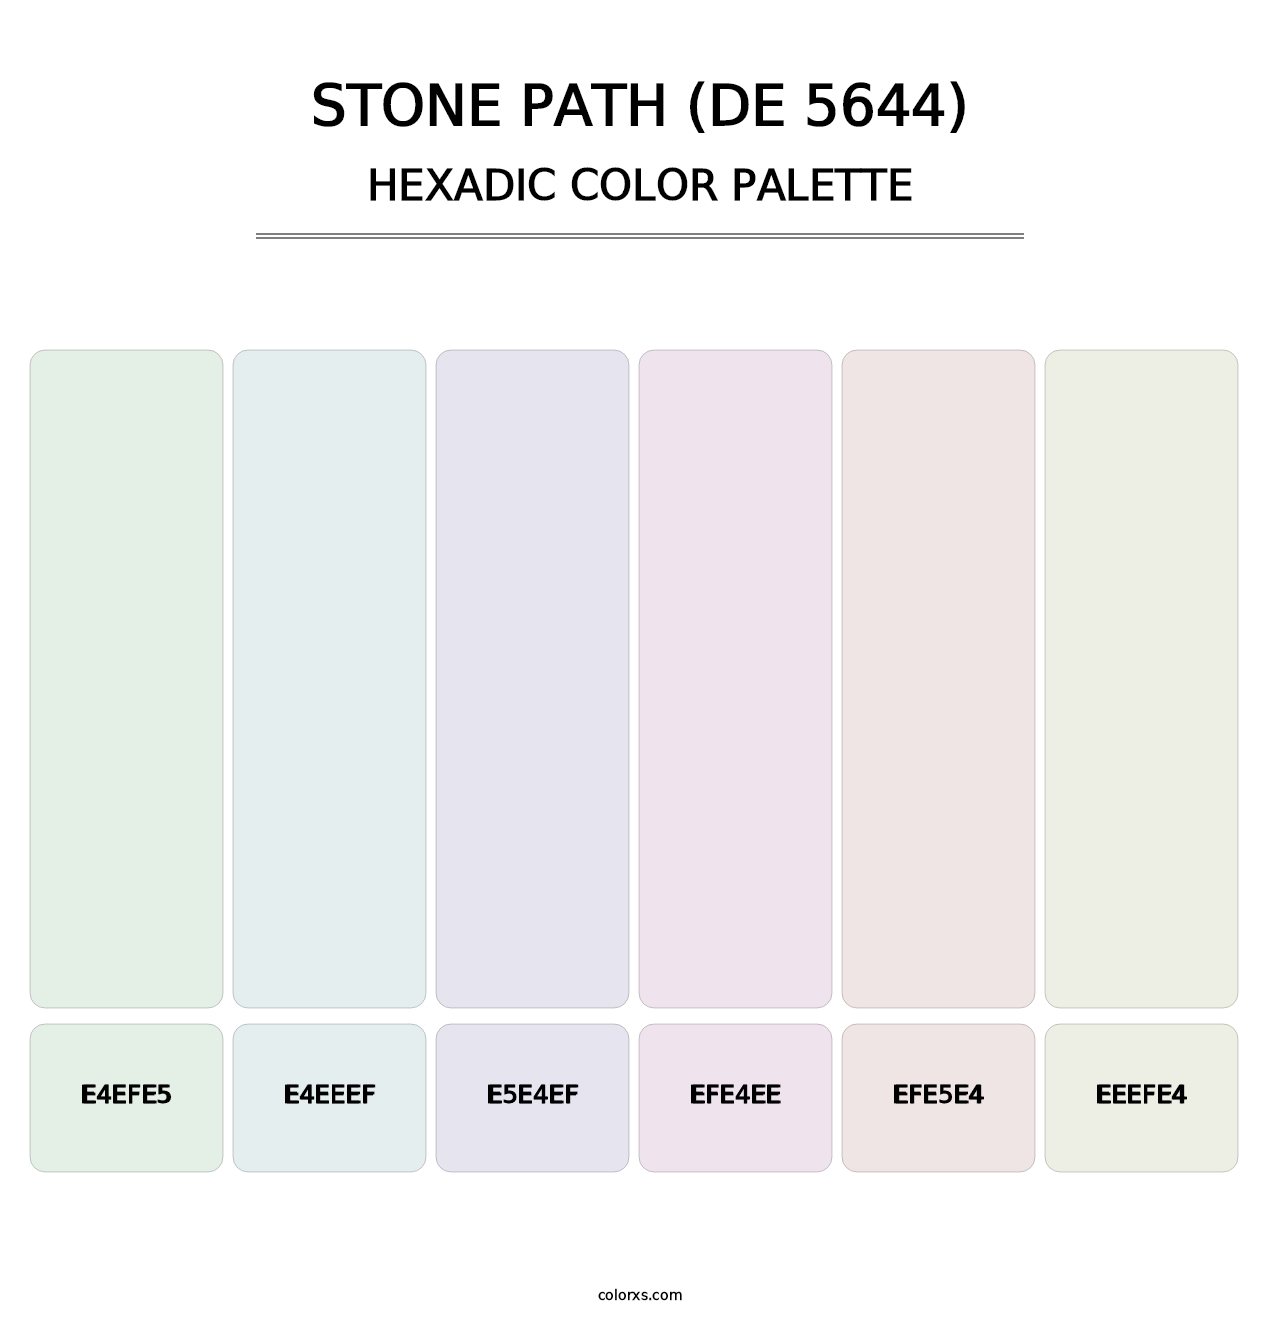 Stone Path (DE 5644) - Hexadic Color Palette